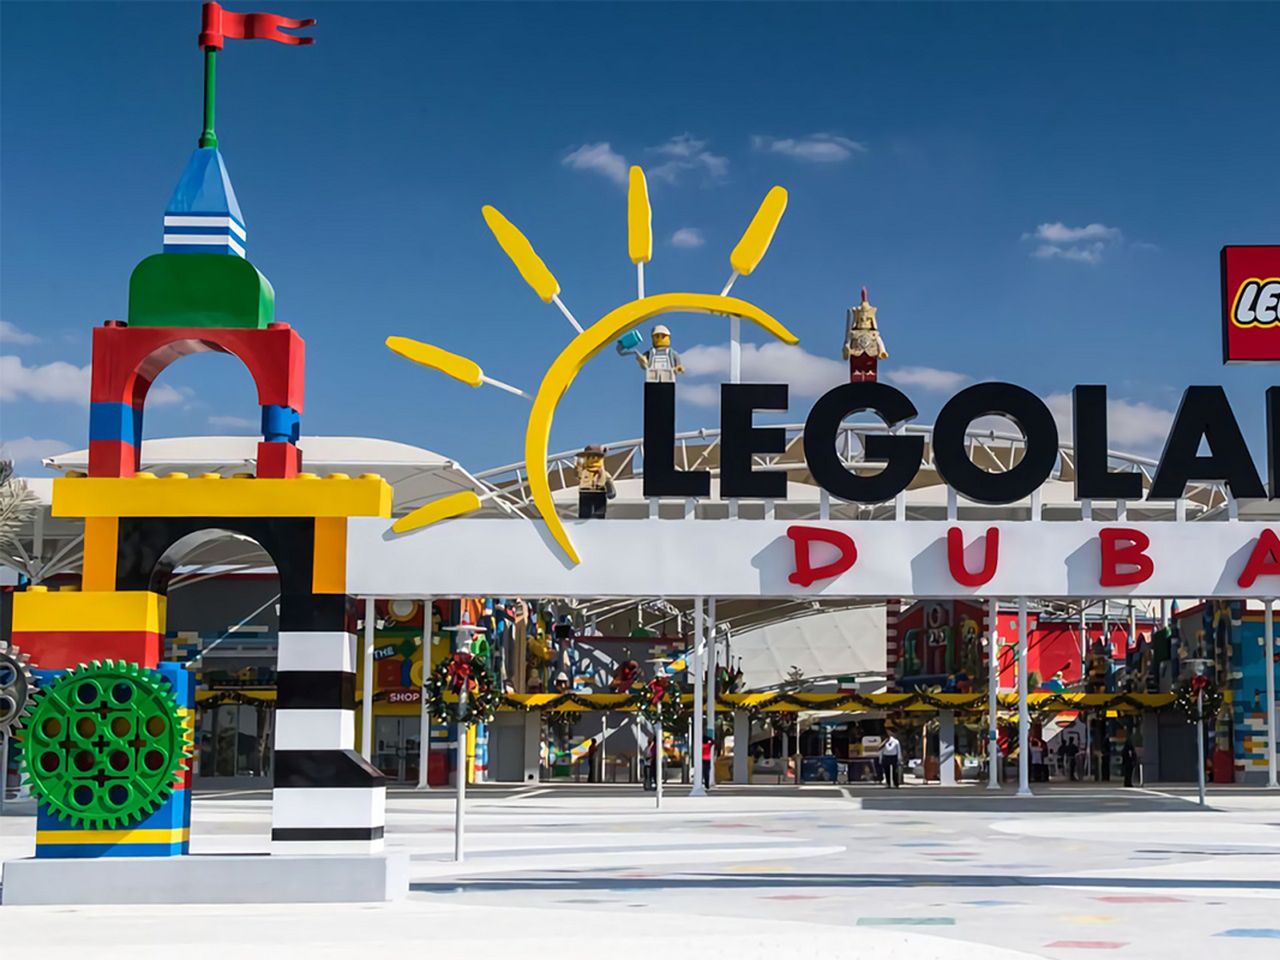 Legoland в Дубае: путешествие в мир lego | Цена 150$, отзывы, описание экскурсии